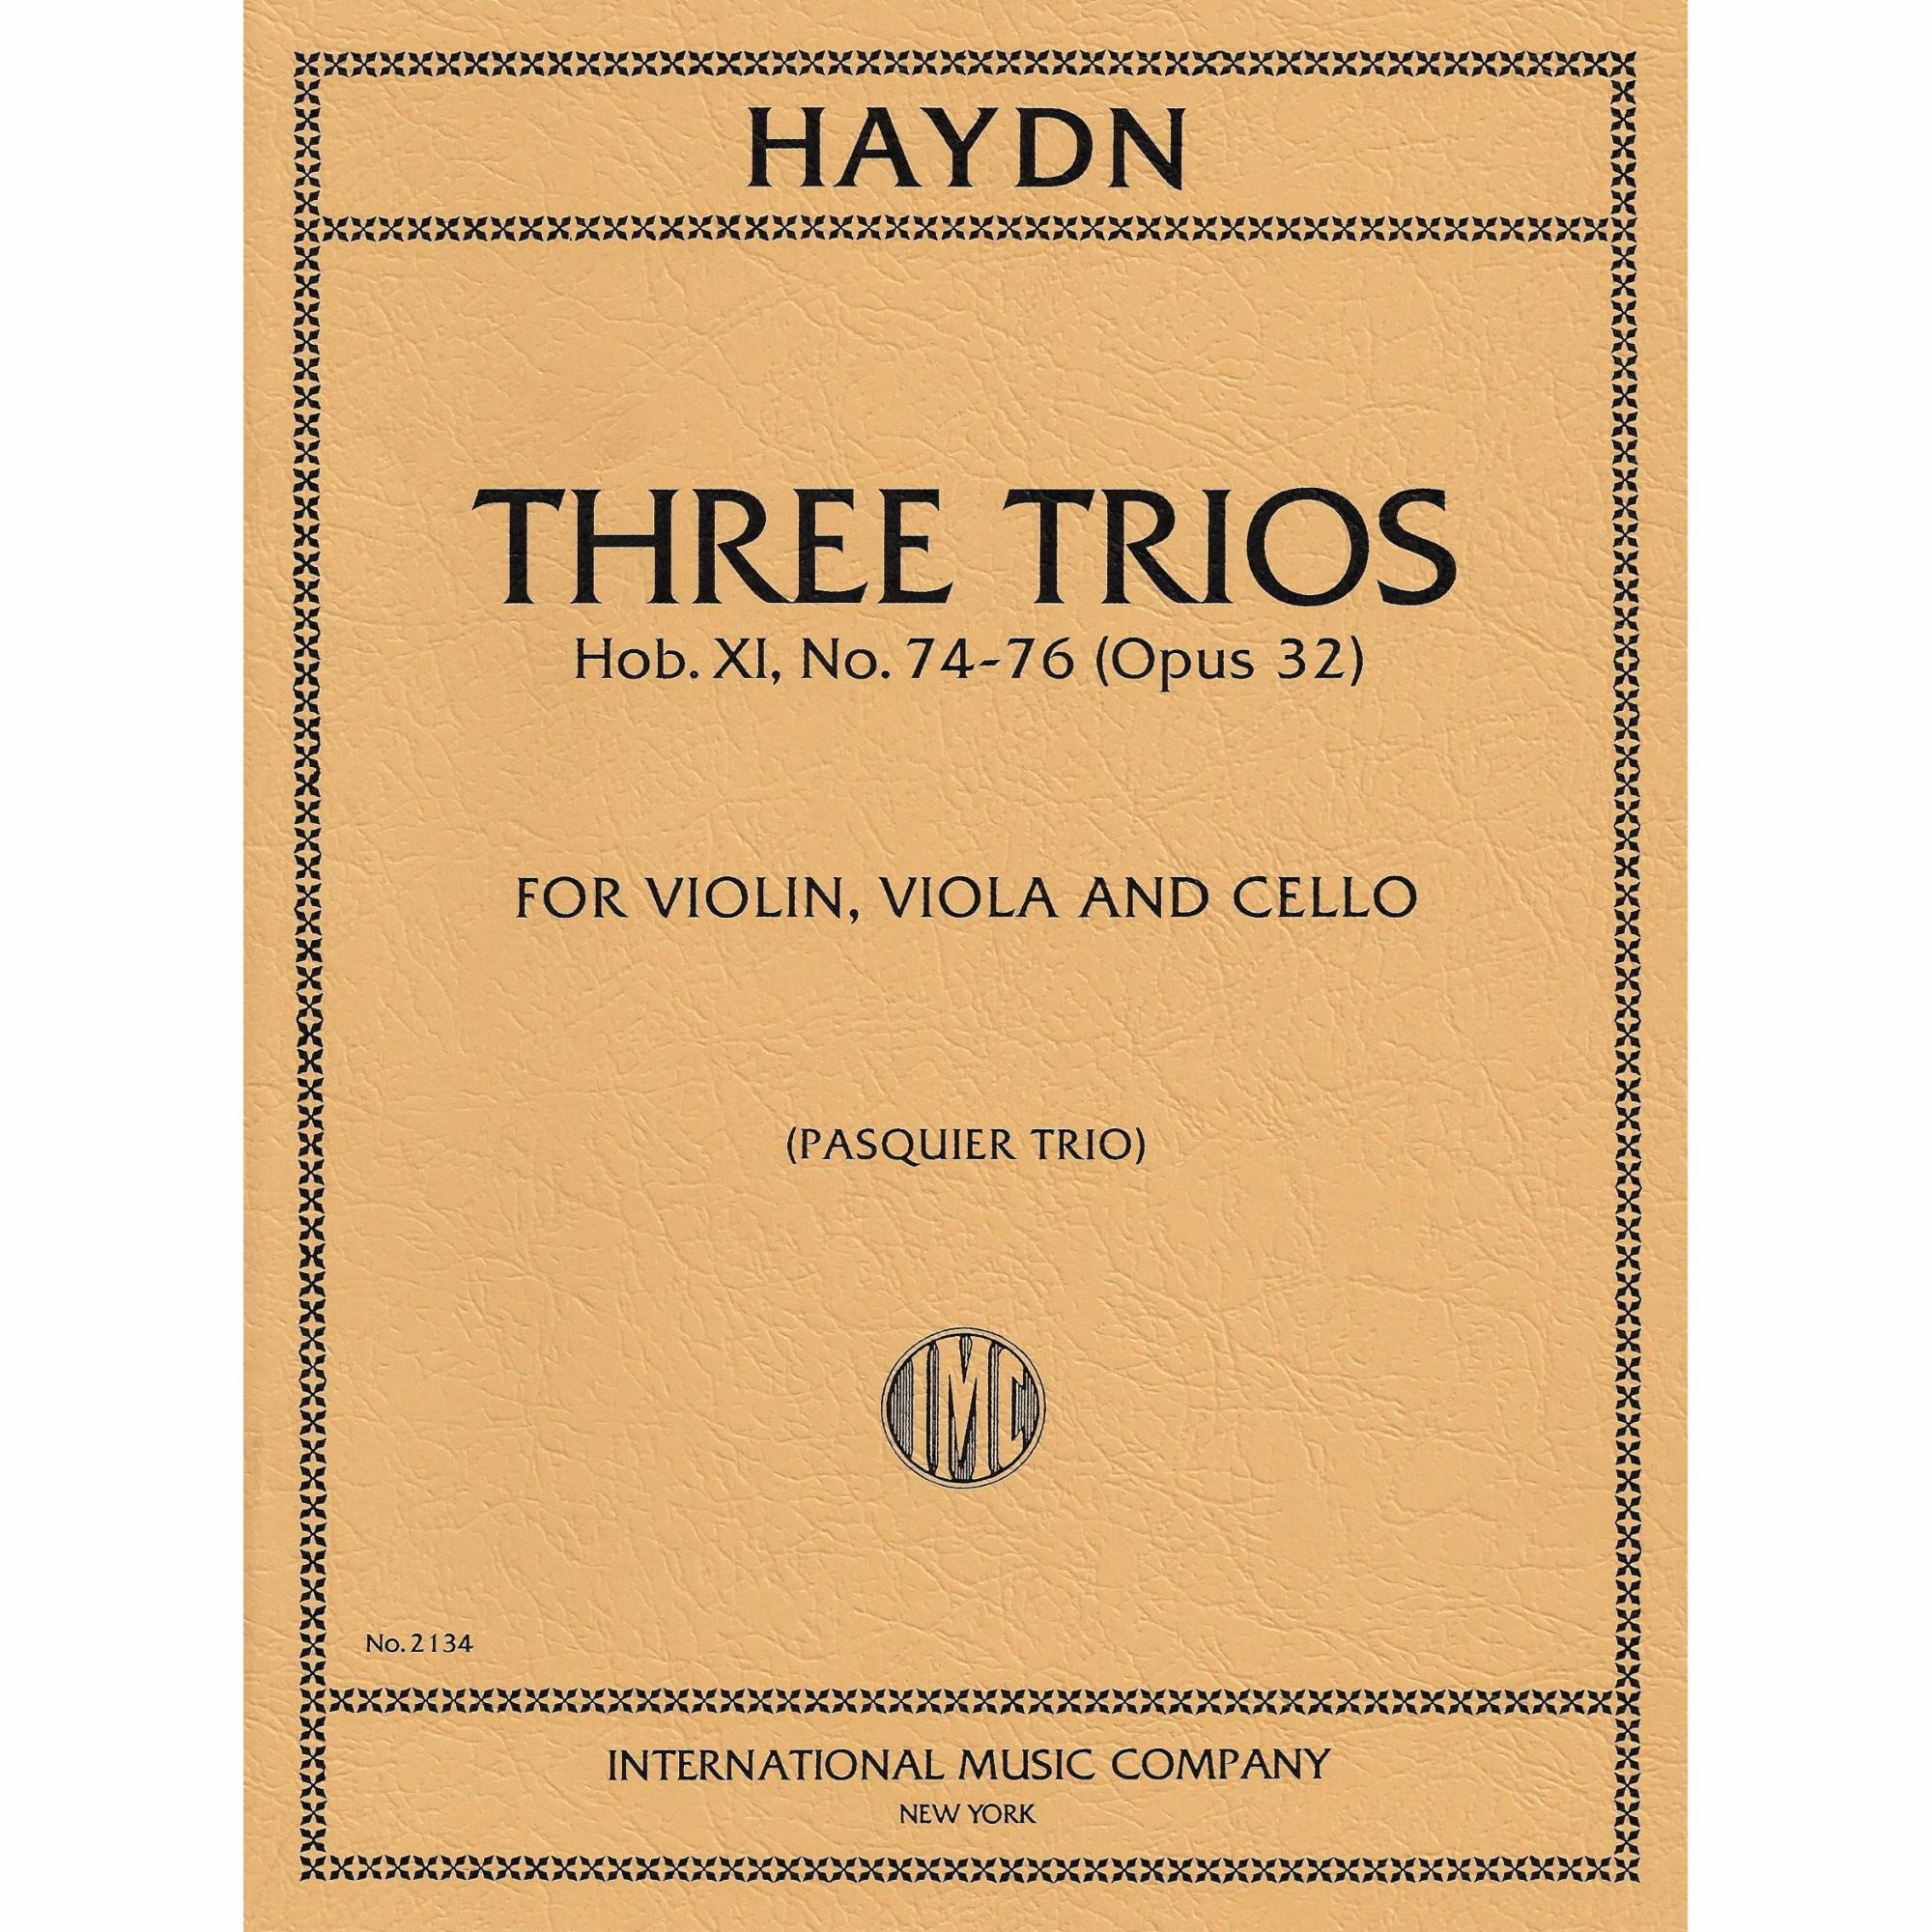 Haydn -- Three Trios, Hob. XI, No. 74-76 for Violin, Viola, and Cello